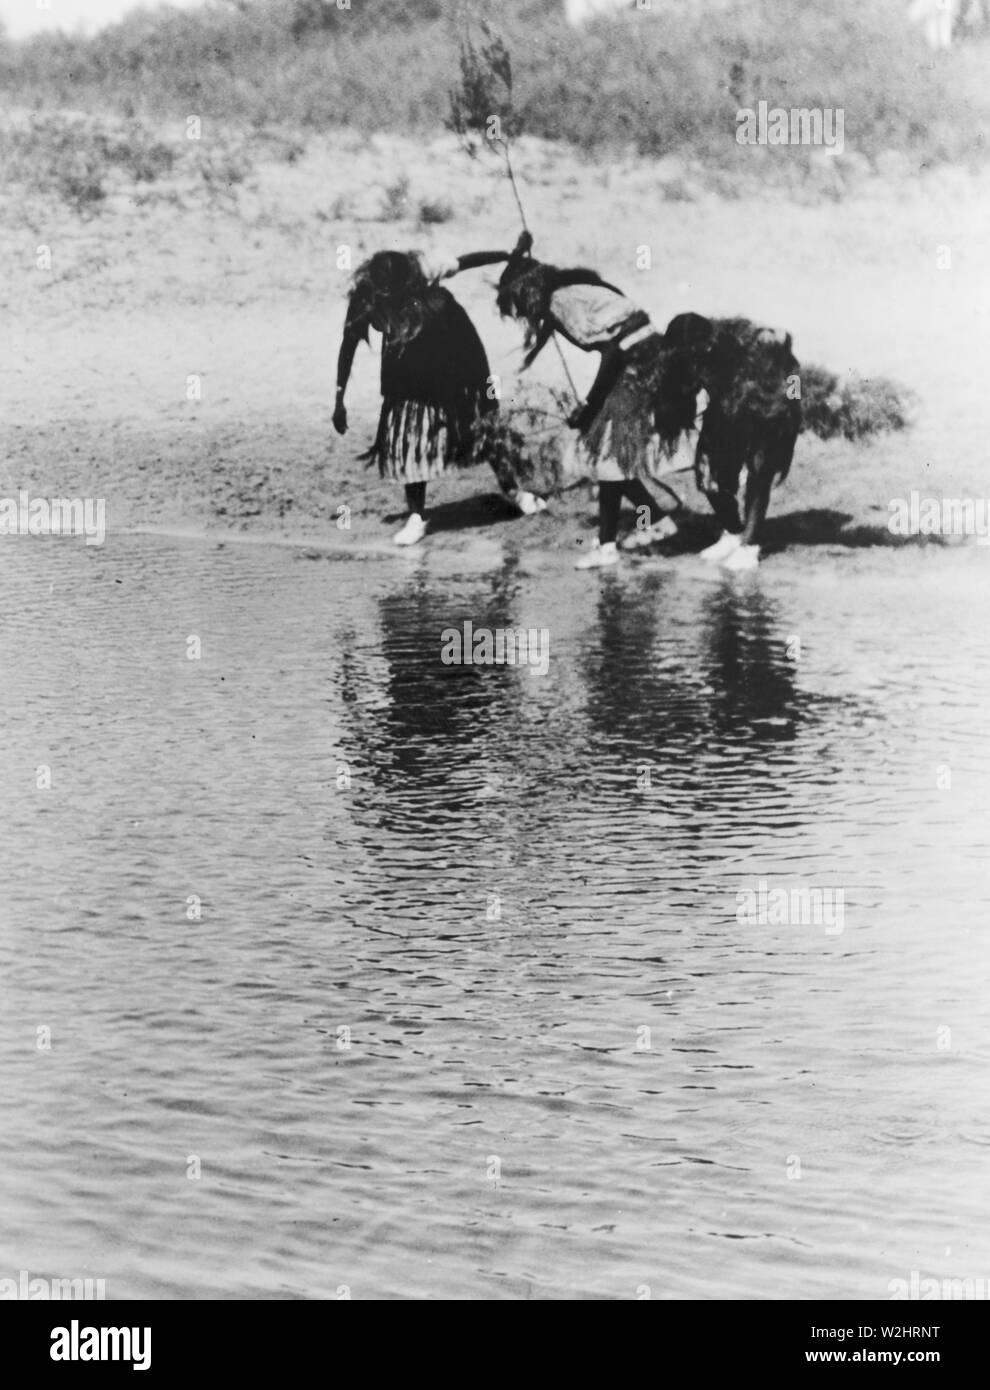 Edward S. Curtis nativi indiani americani - Acqua rito di purificazione, Cheyenne danza animale ca. 1927 Foto Stock